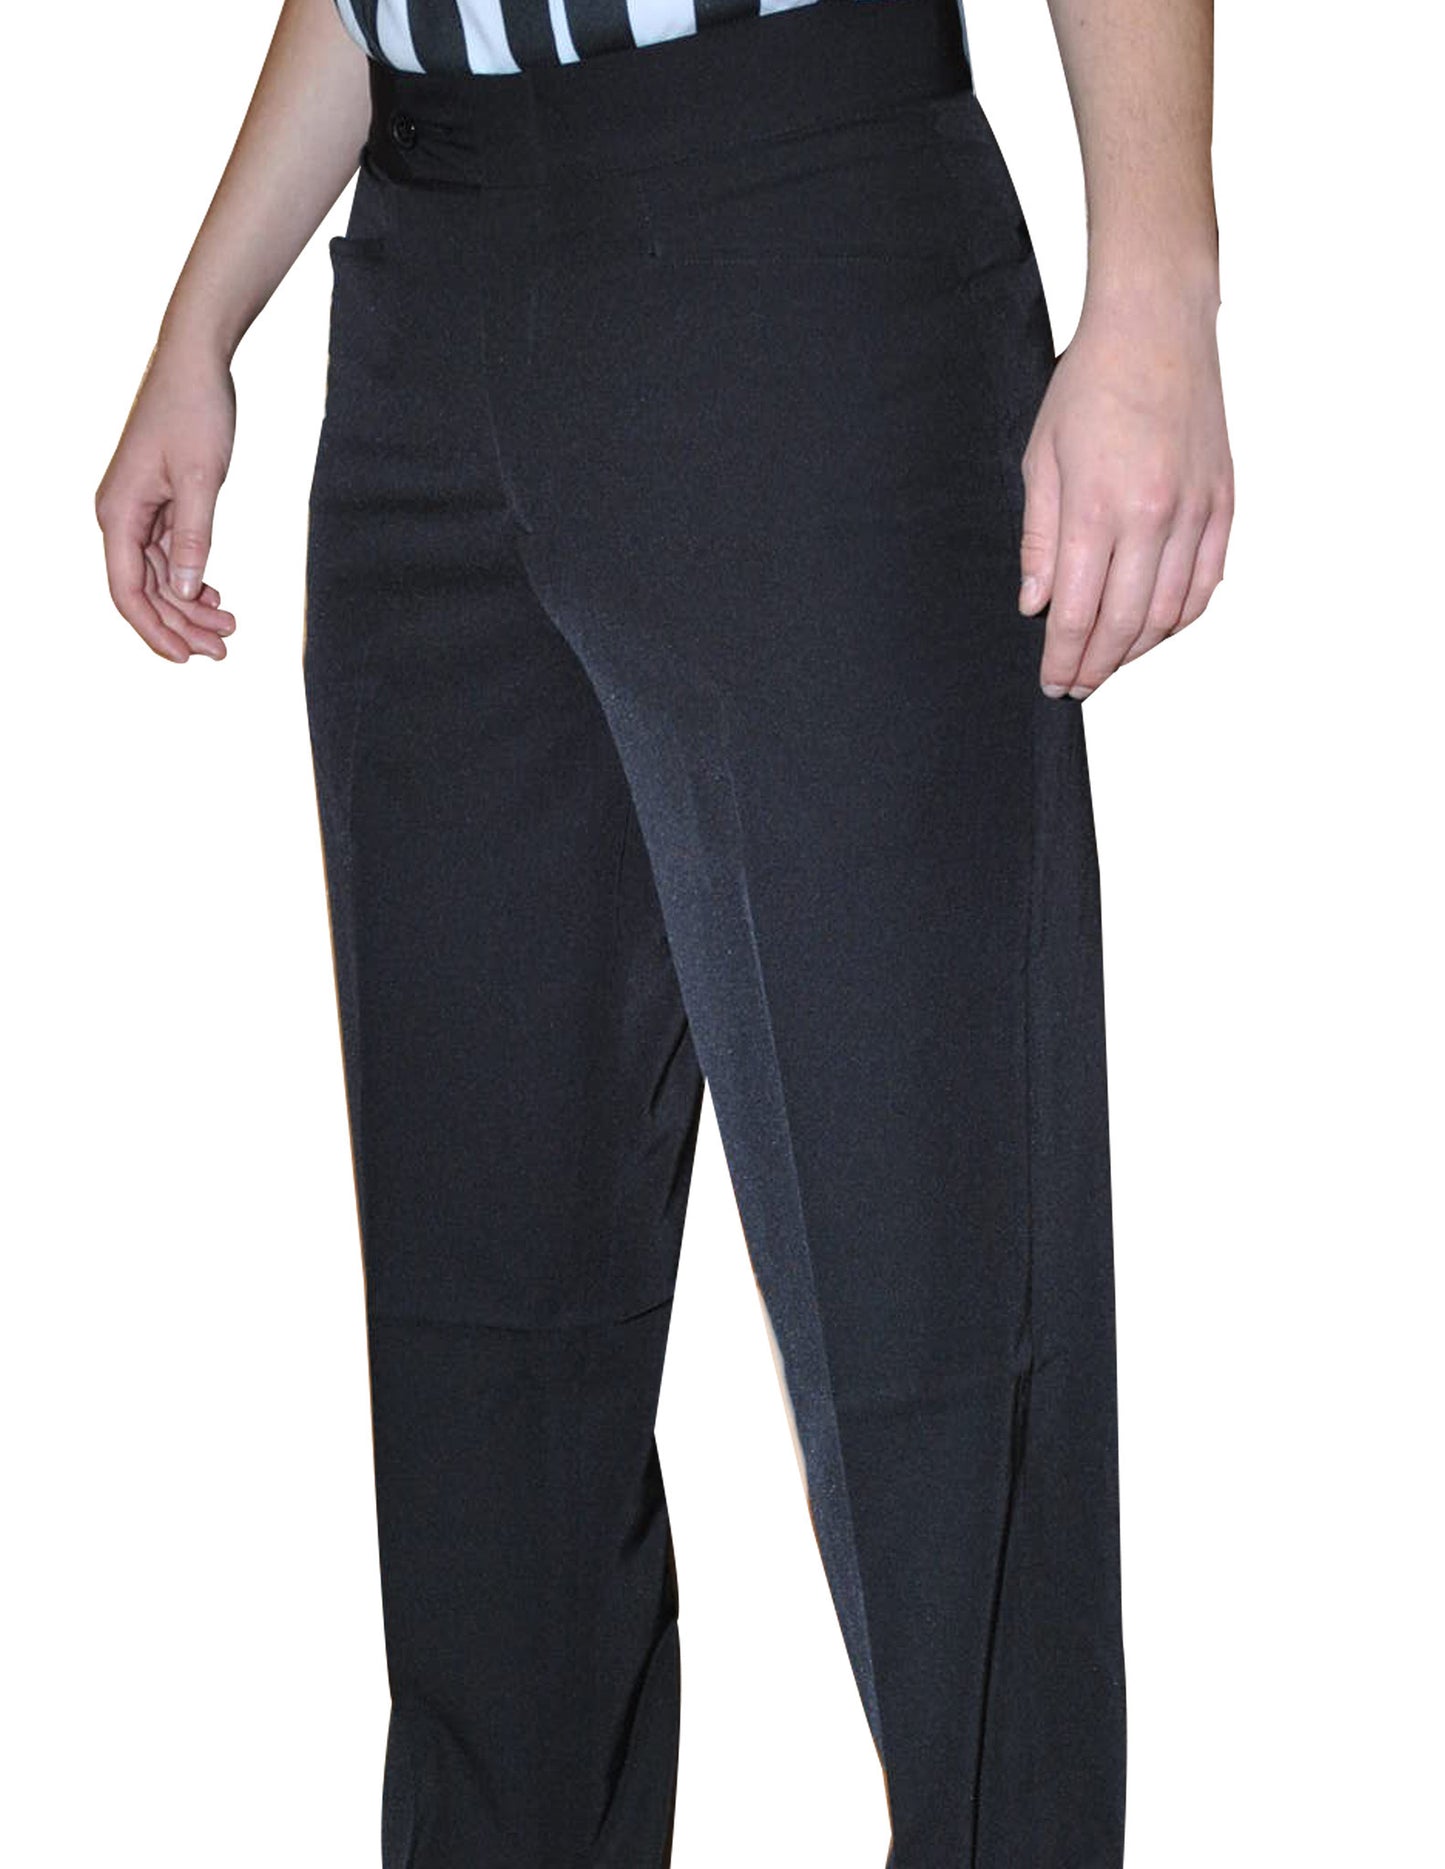 BKS282-Smitty Women's Lightweight Flat Front Pants w/ Western Cut Pockets